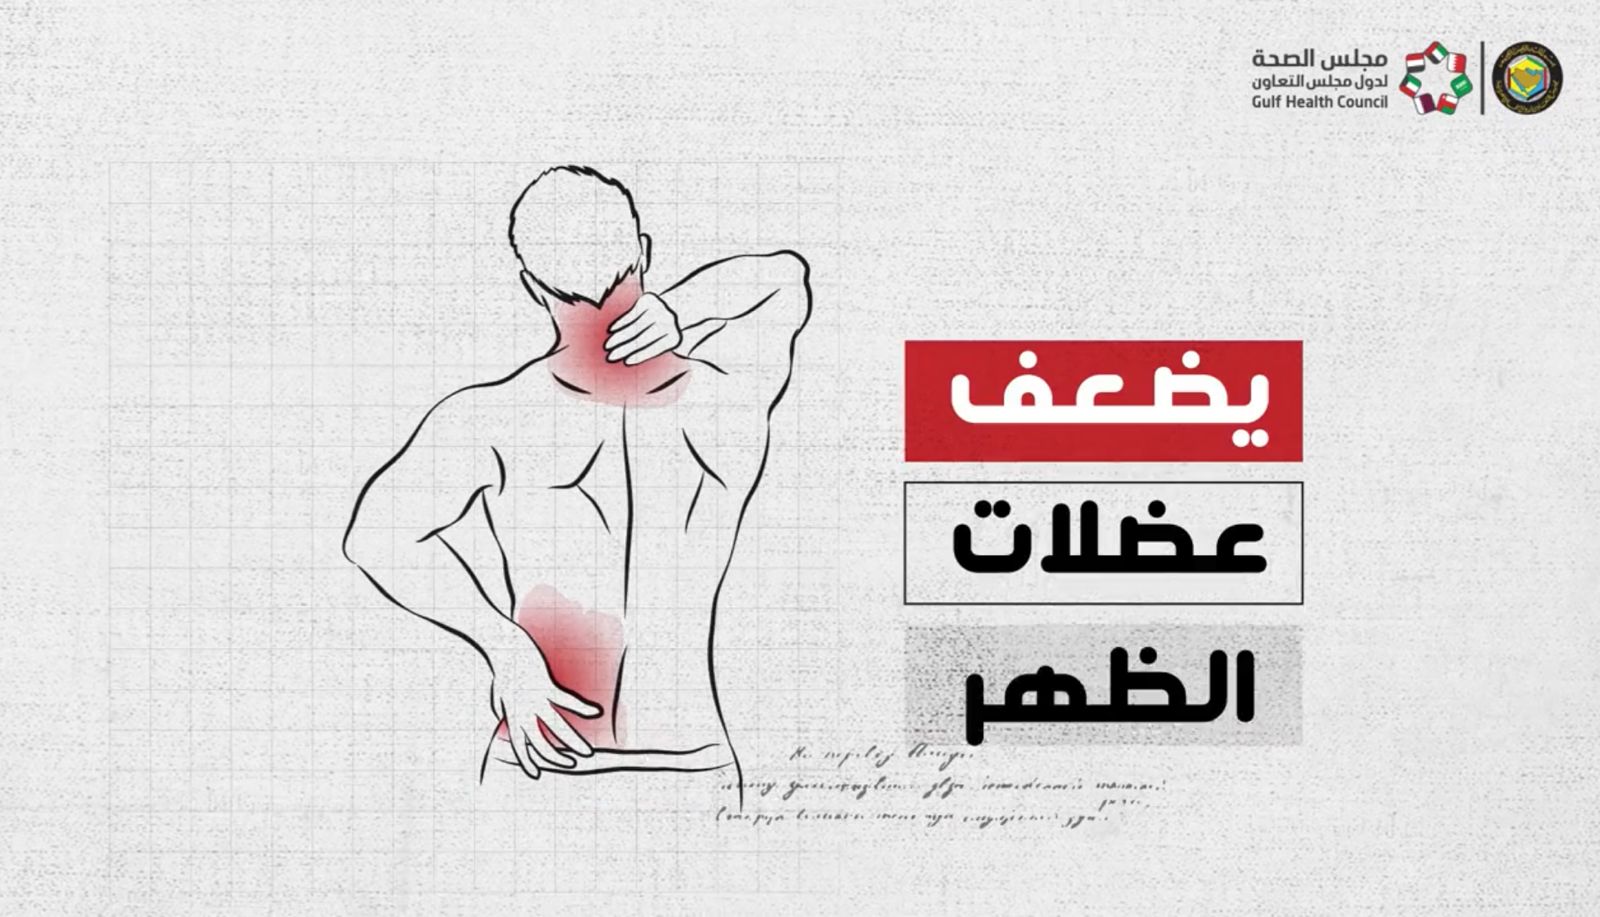 «الصحة الخليجي» يوضح حقيقة وخطر «مشد الخصر» للتنحيف